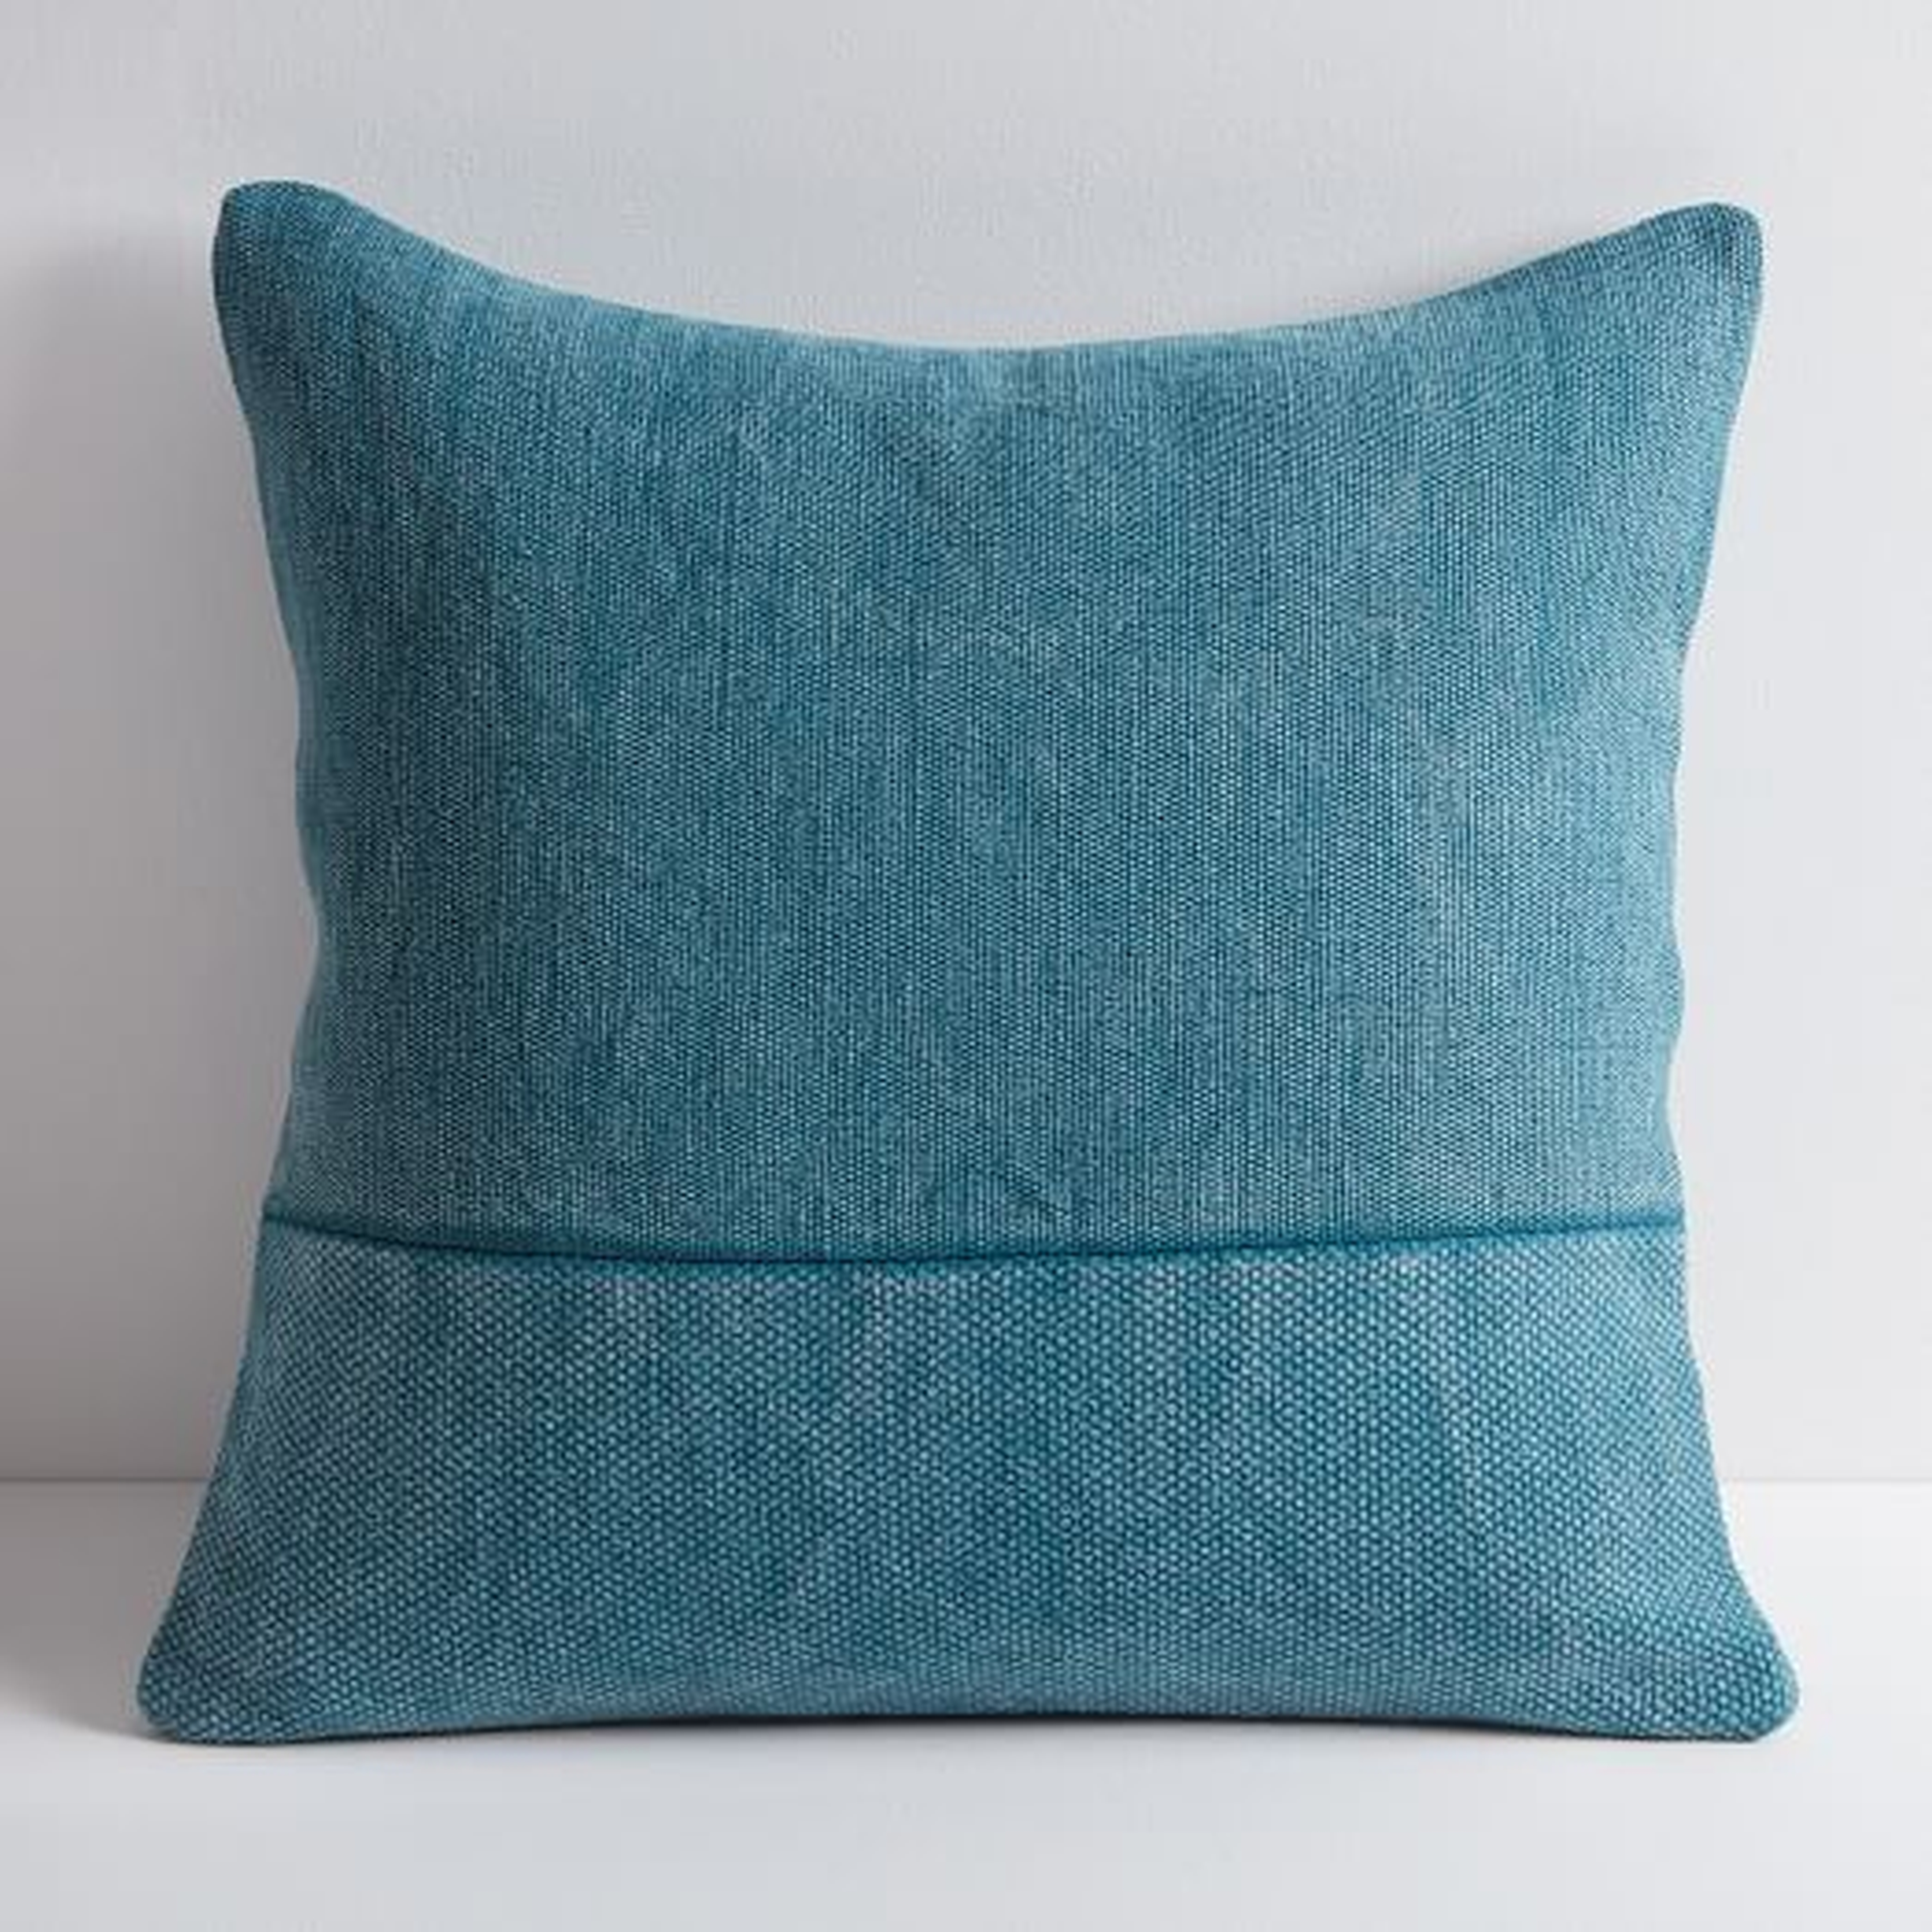 Cotton Canvas Pillow Cover, 18" Sq, Blue Teal - West Elm